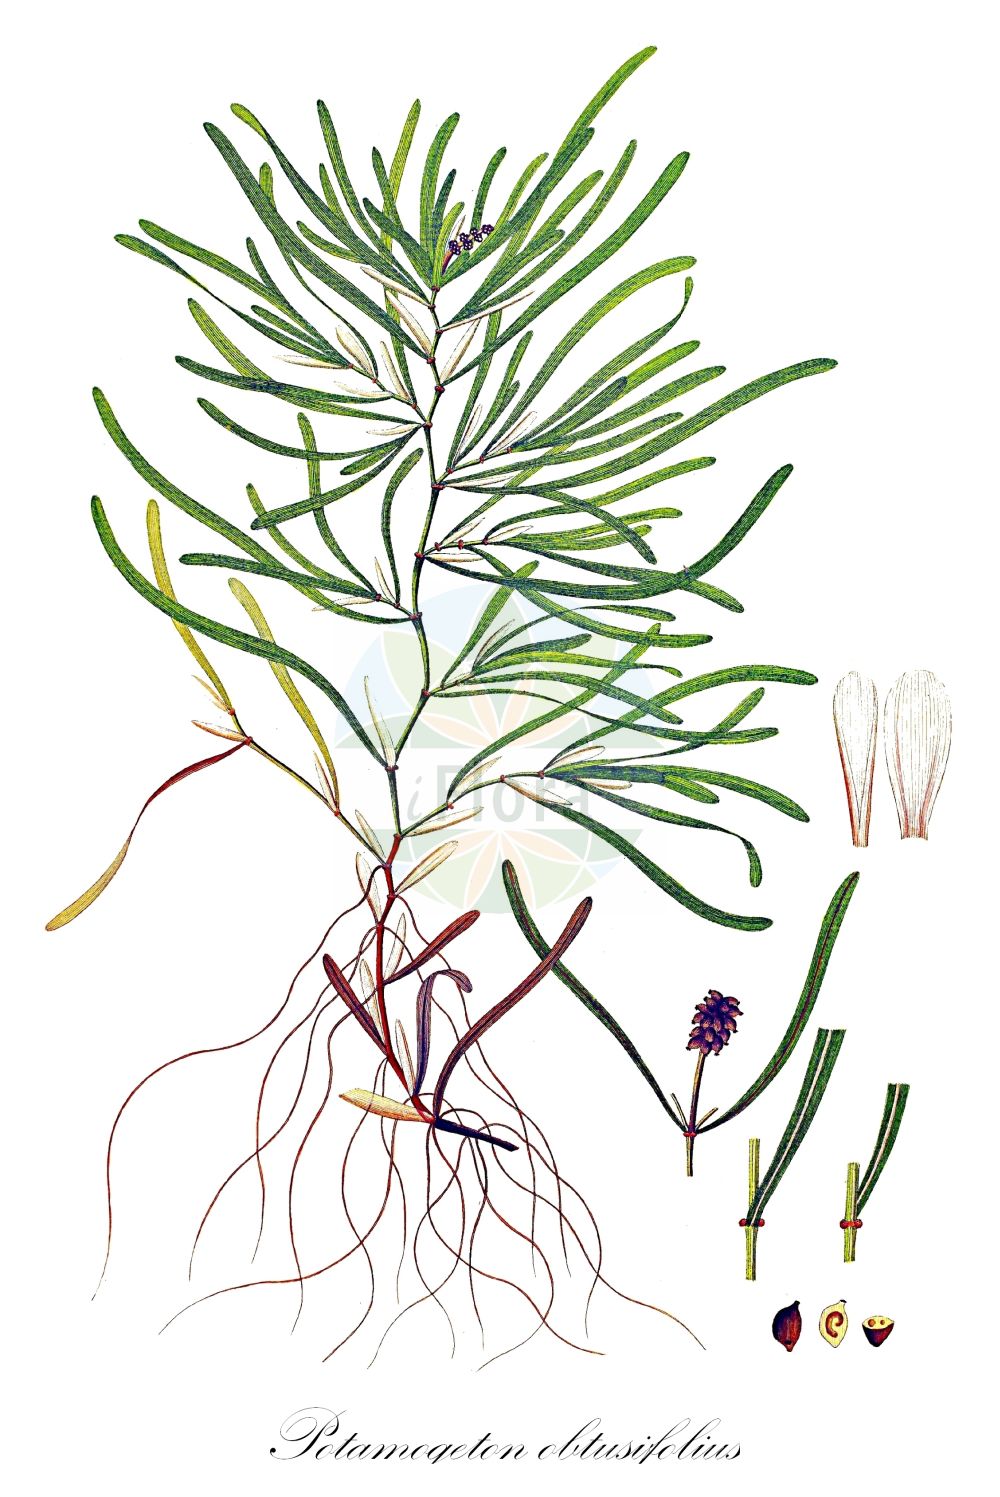 Historische Abbildung von Potamogeton obtusifolius (Stumpfblättriges Laichkraut - Blunt-leaved Pondweed). Das Bild zeigt Blatt, Bluete, Frucht und Same. ---- Historical Drawing of Potamogeton obtusifolius (Stumpfblättriges Laichkraut - Blunt-leaved Pondweed). The image is showing leaf, flower, fruit and seed.(Potamogeton obtusifolius,Stumpfblättriges Laichkraut,Blunt-leaved Pondweed,Potamogeton obtusifolius,Stumpfblaettriges Laichkraut,Blunt-leaved Pondweed,Bluntleaf Pondweed,Broad-leaved Pondweed,Grassy Pondweed,Potamogeton,Laichkraut,Pondweed,Potamogetonaceae,Laichkrautgewächse,Pondweed family,Blatt,Bluete,Frucht,Same,leaf,flower,fruit,seed,Oeder (1761-1883))